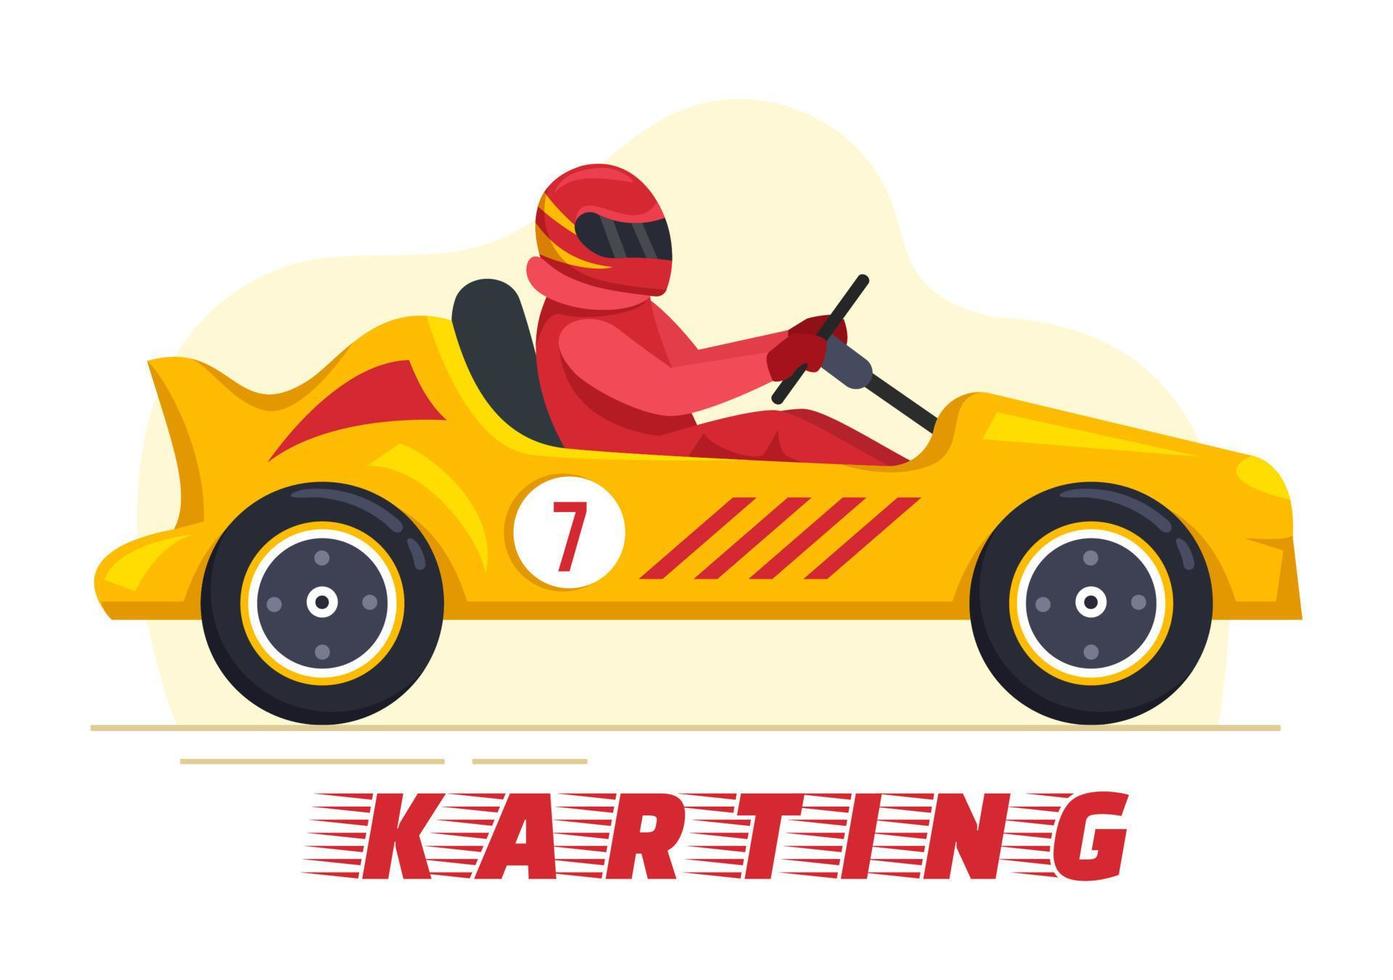 deporte de karting con juego de carreras go kart o mini coche en pista de circuito pequeño en dibujos animados planos ilustración de plantilla dibujada a mano vector